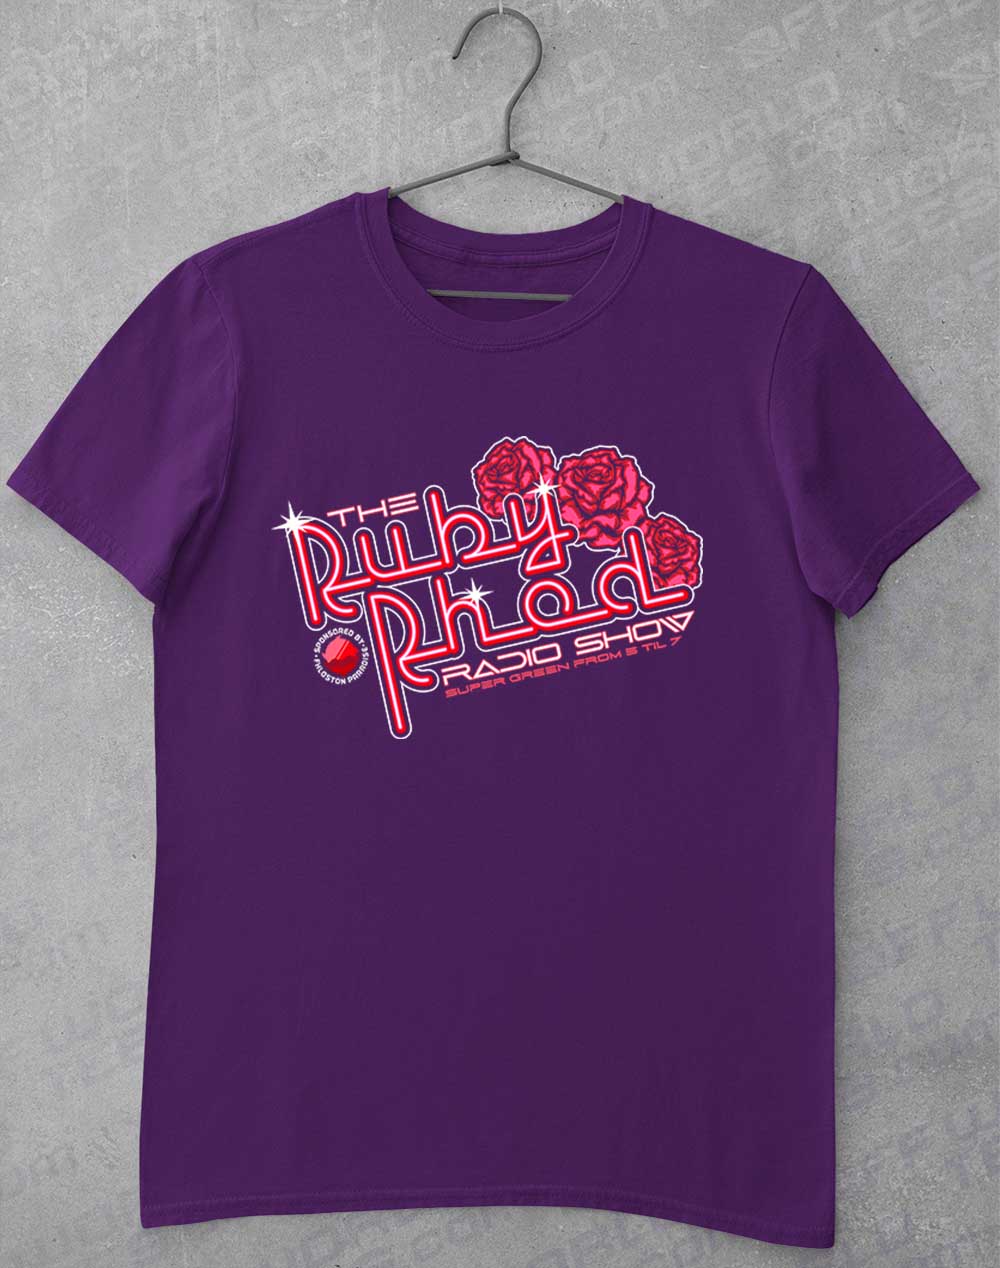 Purple - Ruby Rhod Radio Show T-Shirt